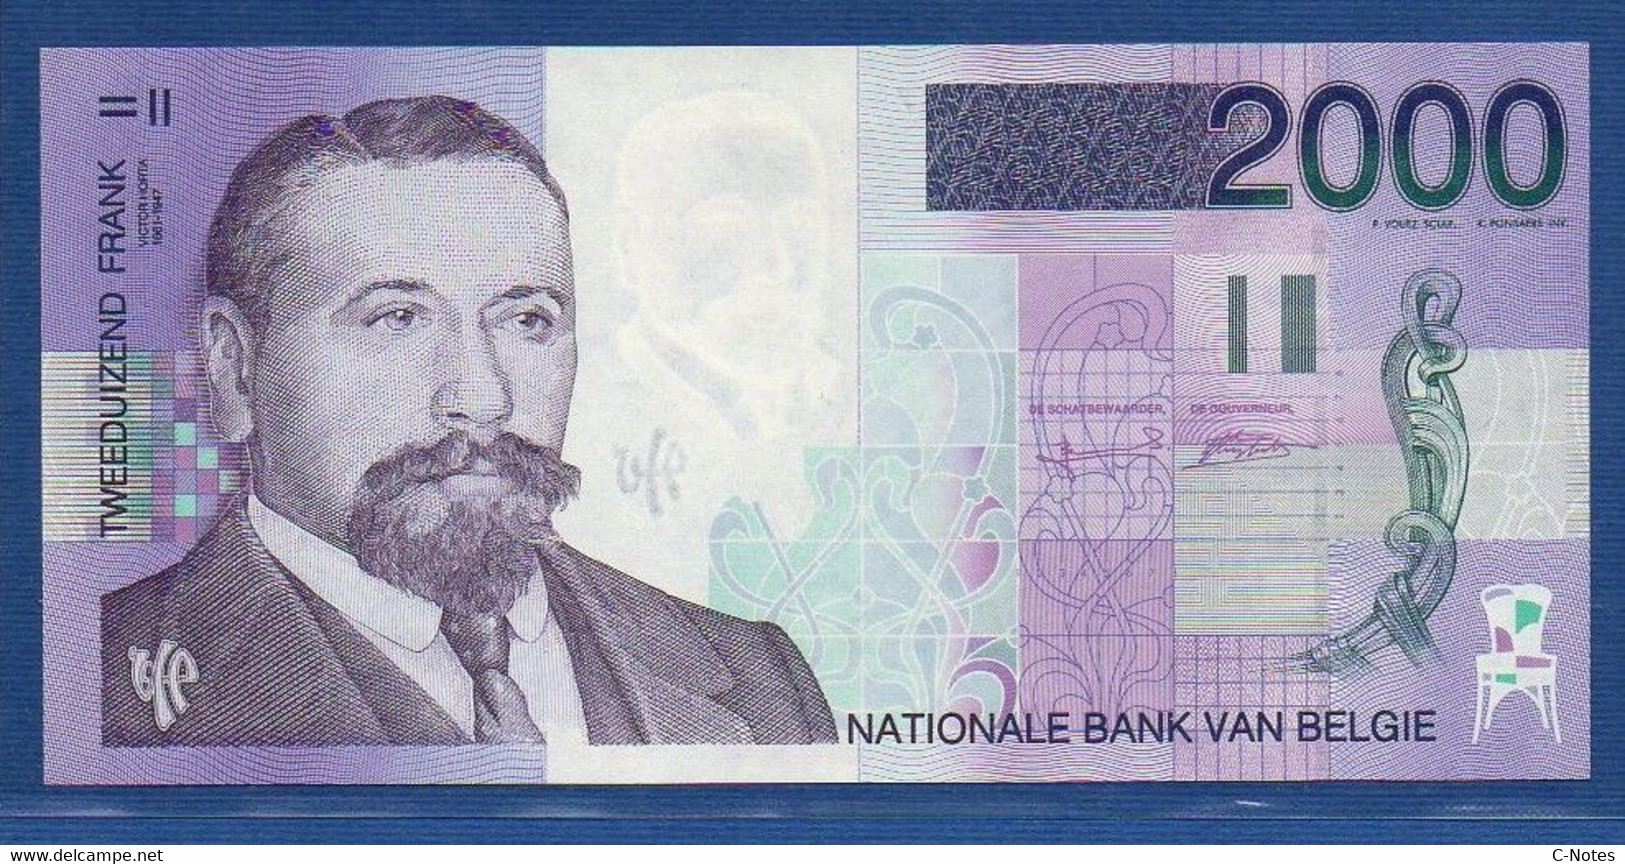 BELGIUM - P.151 - 2000 Francs ND (1994-2001) UNC, Serie 83400570957 - 2000 Francs